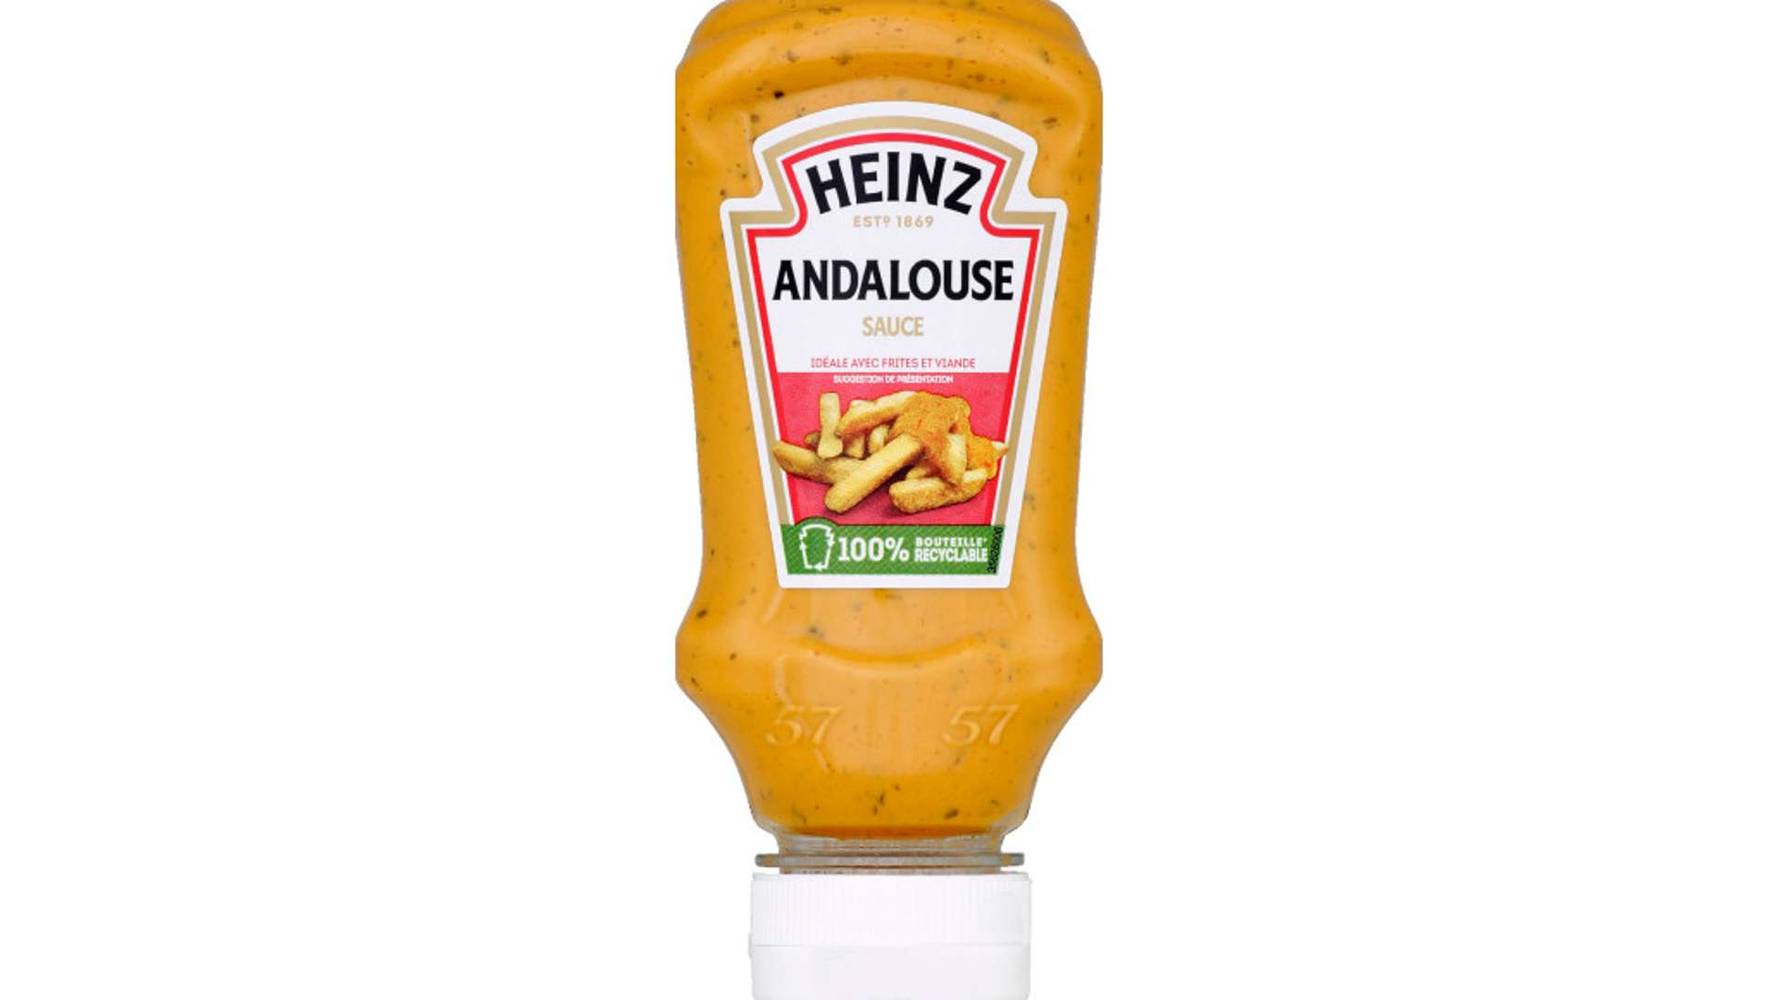 Heinz Sauce Andalouse, pimentée et onctueuse Le flacon souple de 220g